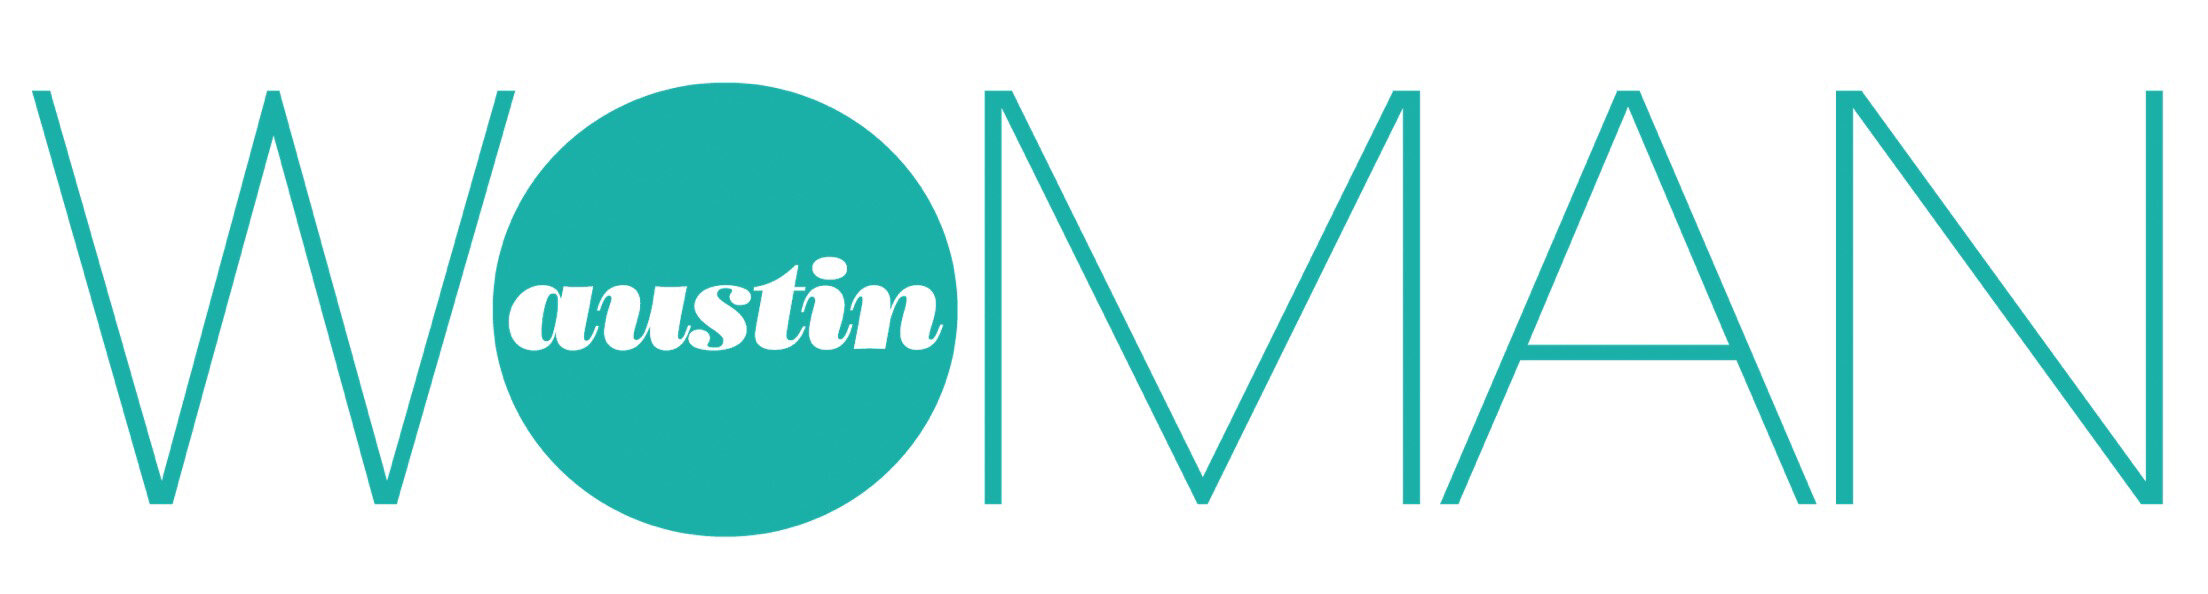 austin woman logo 2020.jpg